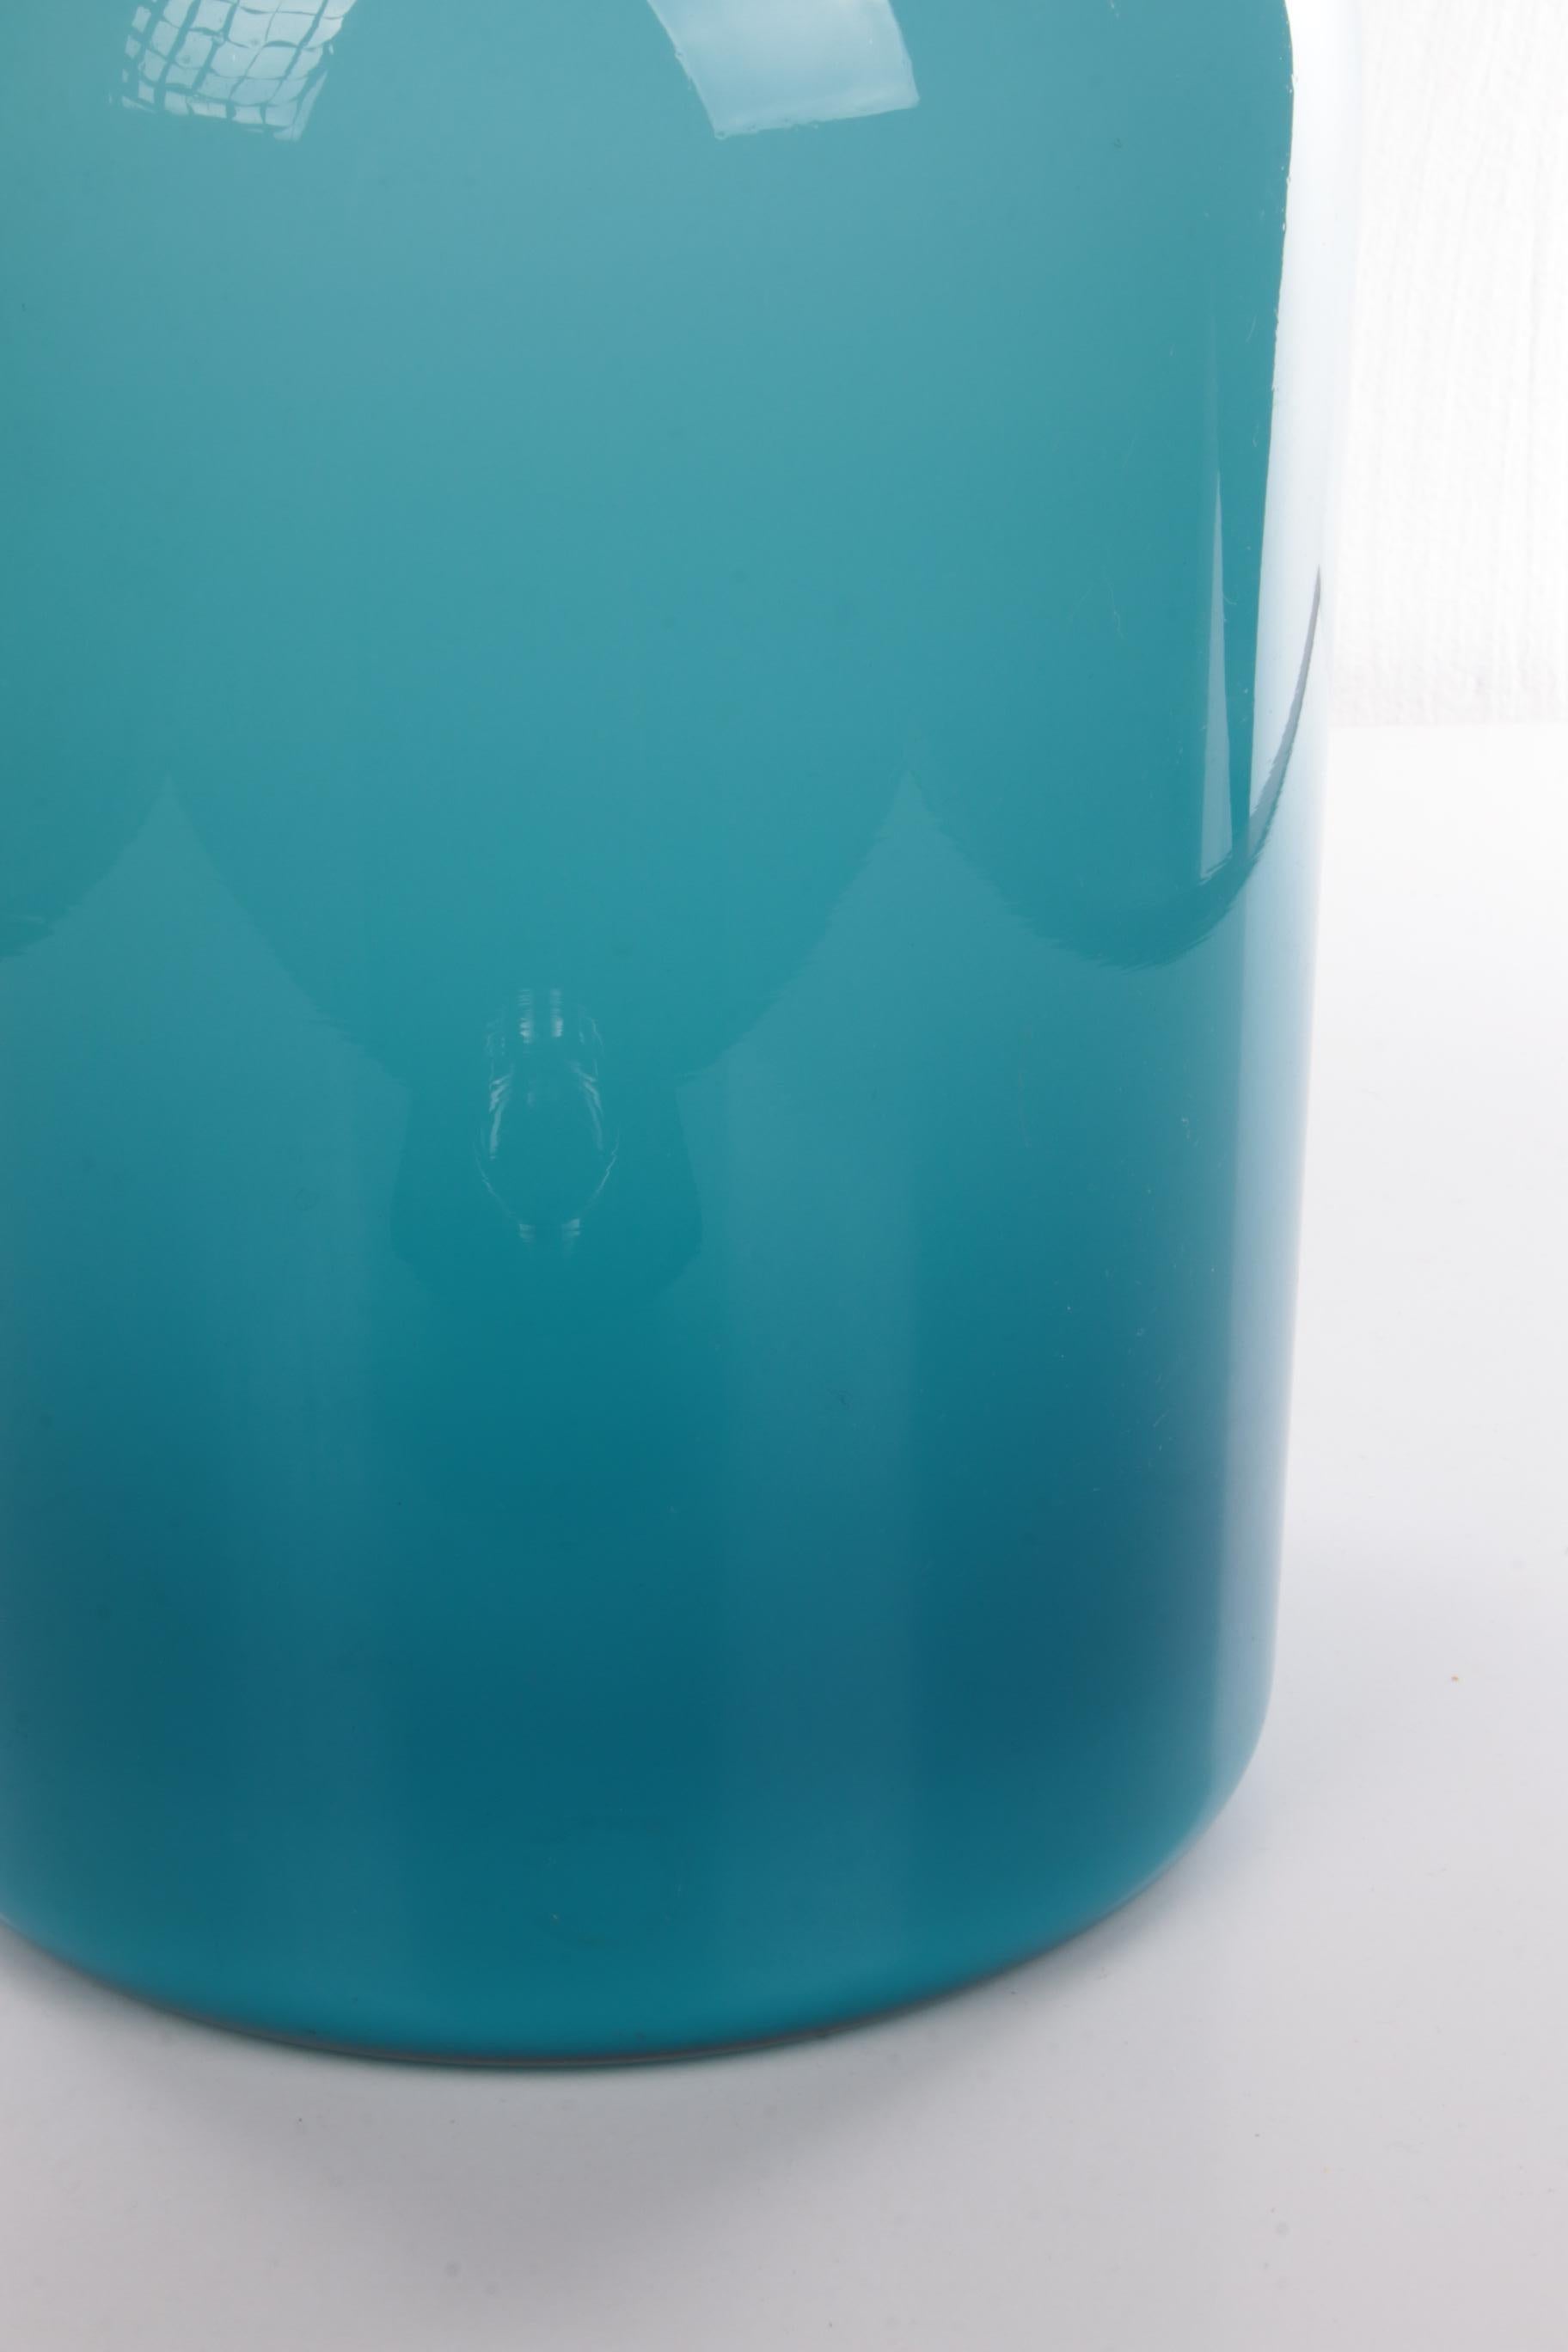 Otto Brauer for Kastrup Holmegaard, Light Blue Bottle Vase 